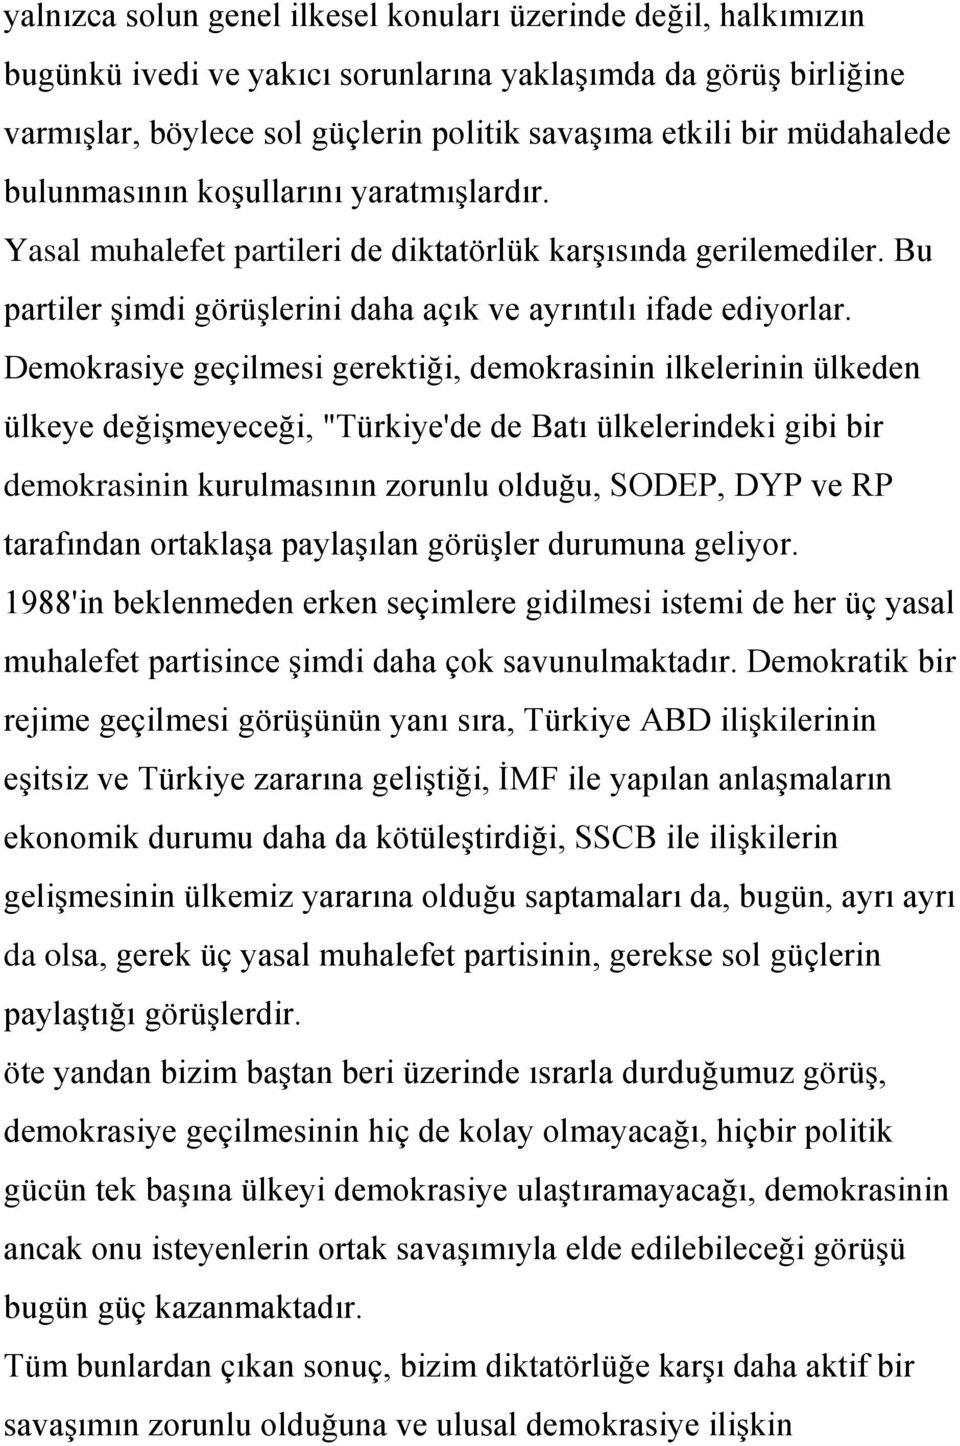 Demokrasiye geçilmesi gerektiği, demokrasinin ilkelerinin ülkeden ülkeye değiģmeyeceği, "Türkiye'de de Batı ülkelerindeki gibi bir demokrasinin kurulmasının zorunlu olduğu, SODEP, DYP ve RP